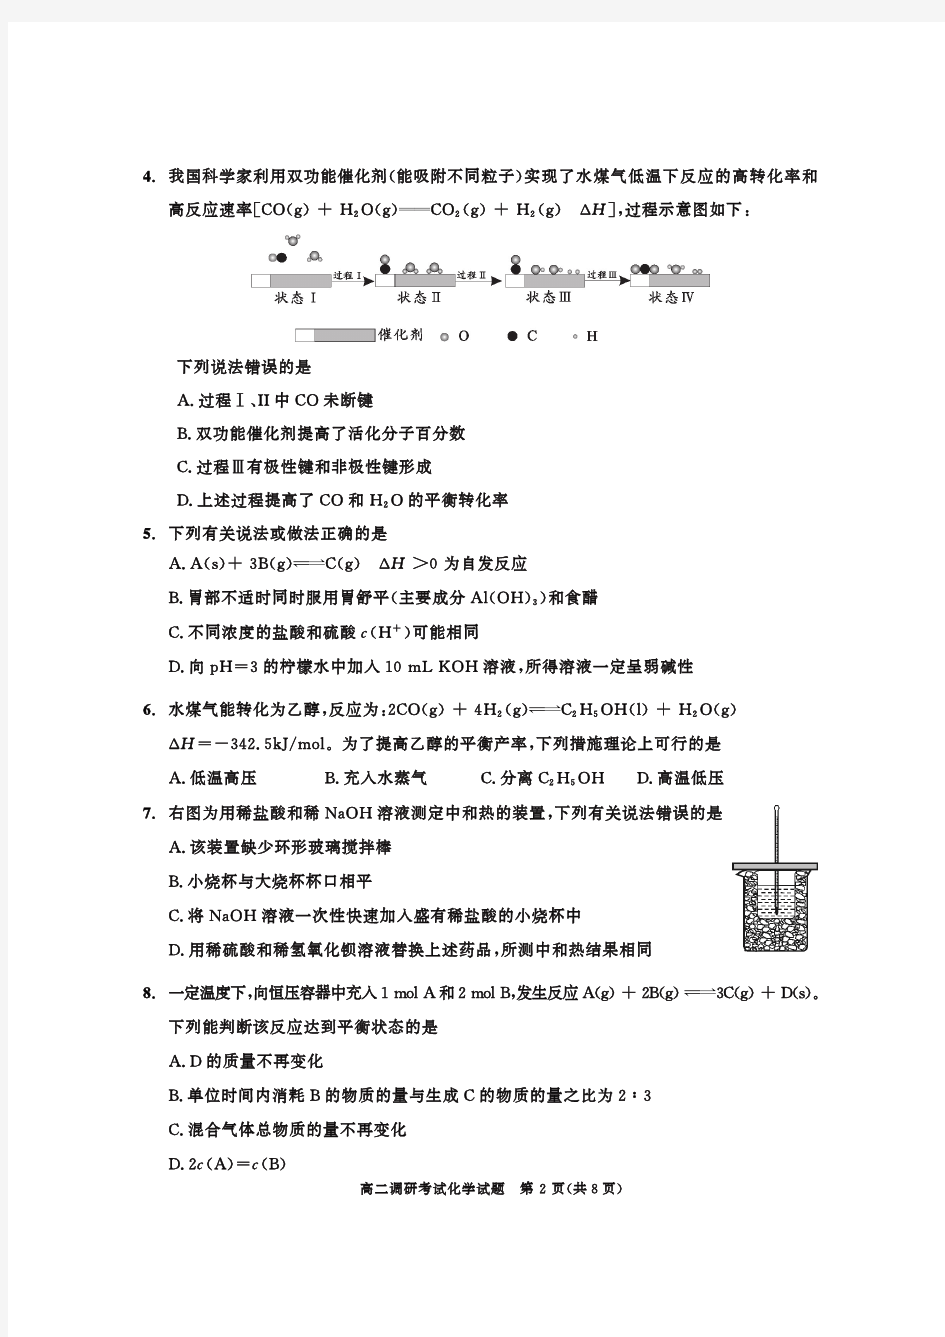 2021年01月26日四川省成都市高2022届高2019级上期期末高二年级调研考试化学试题